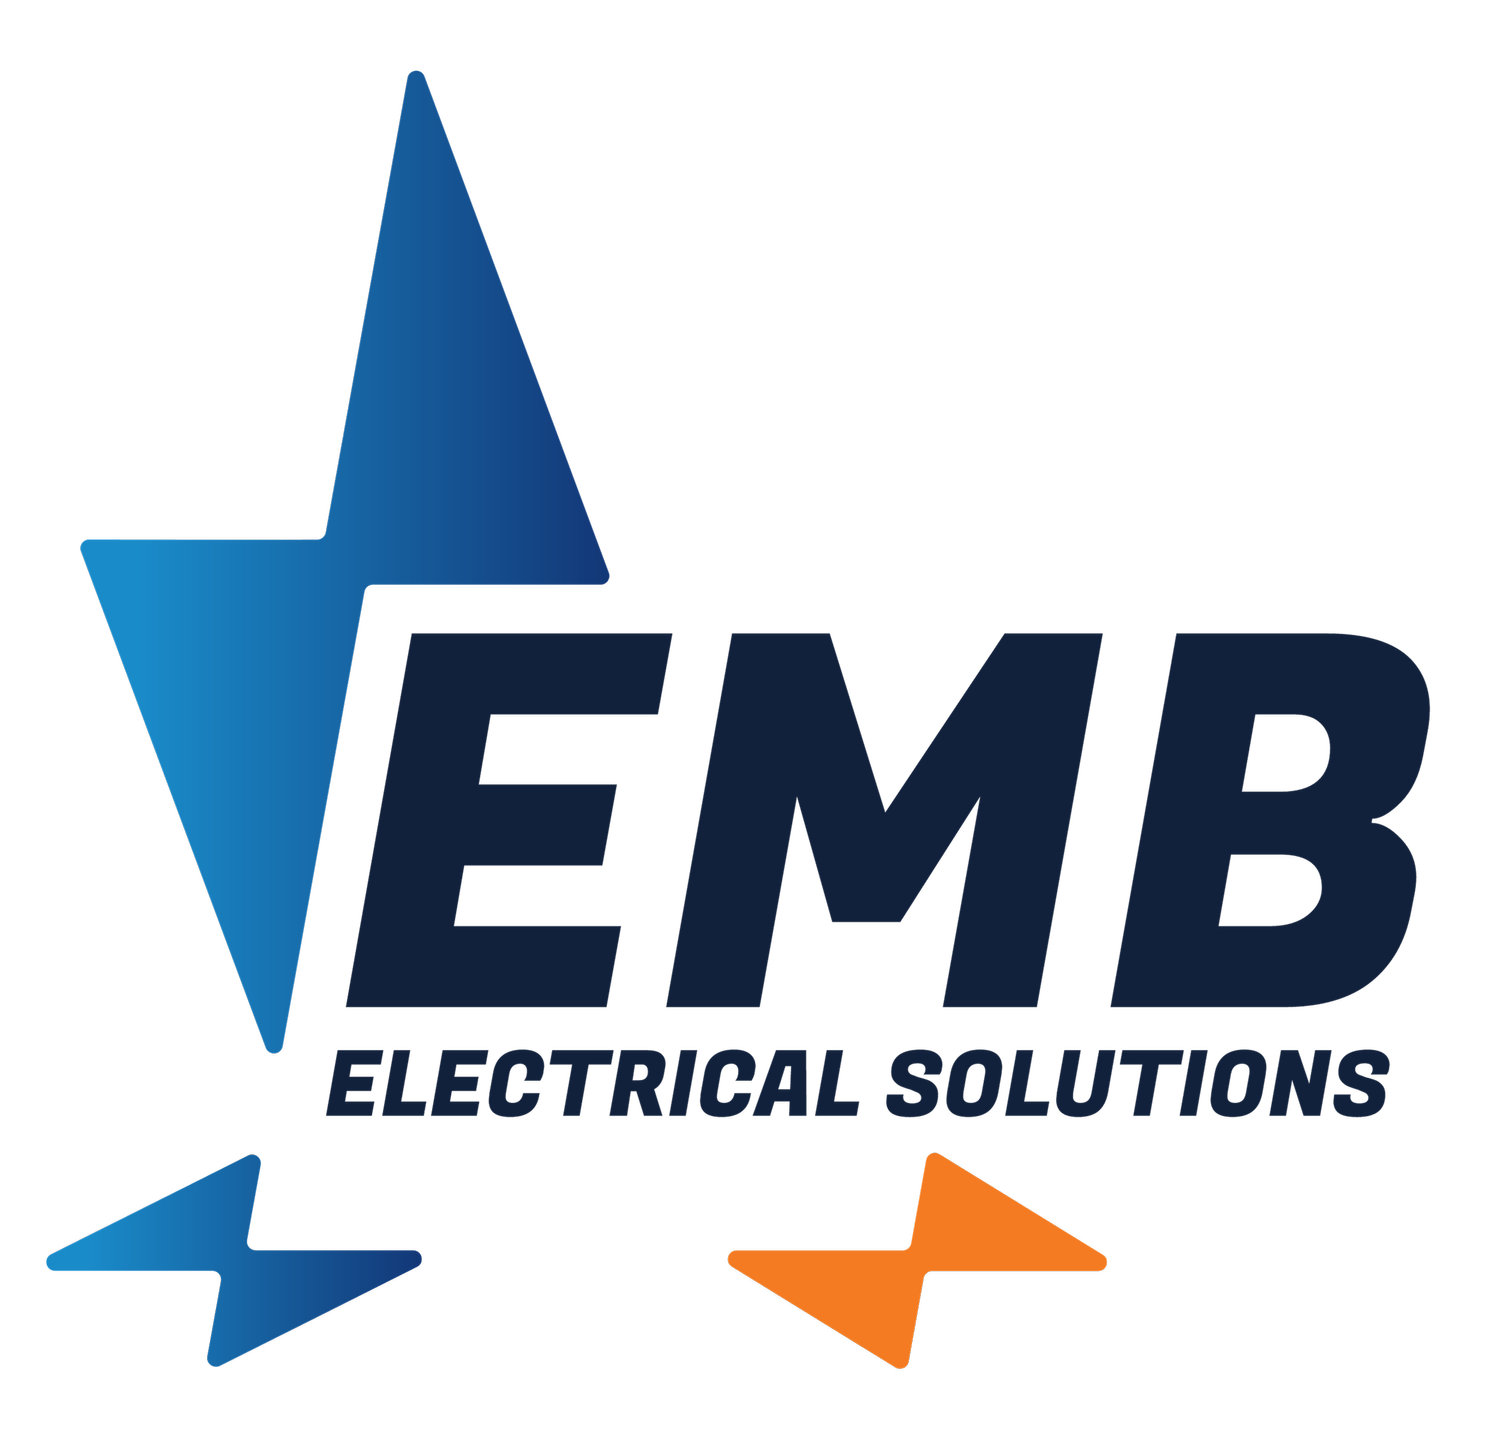 Electro MB Ltd